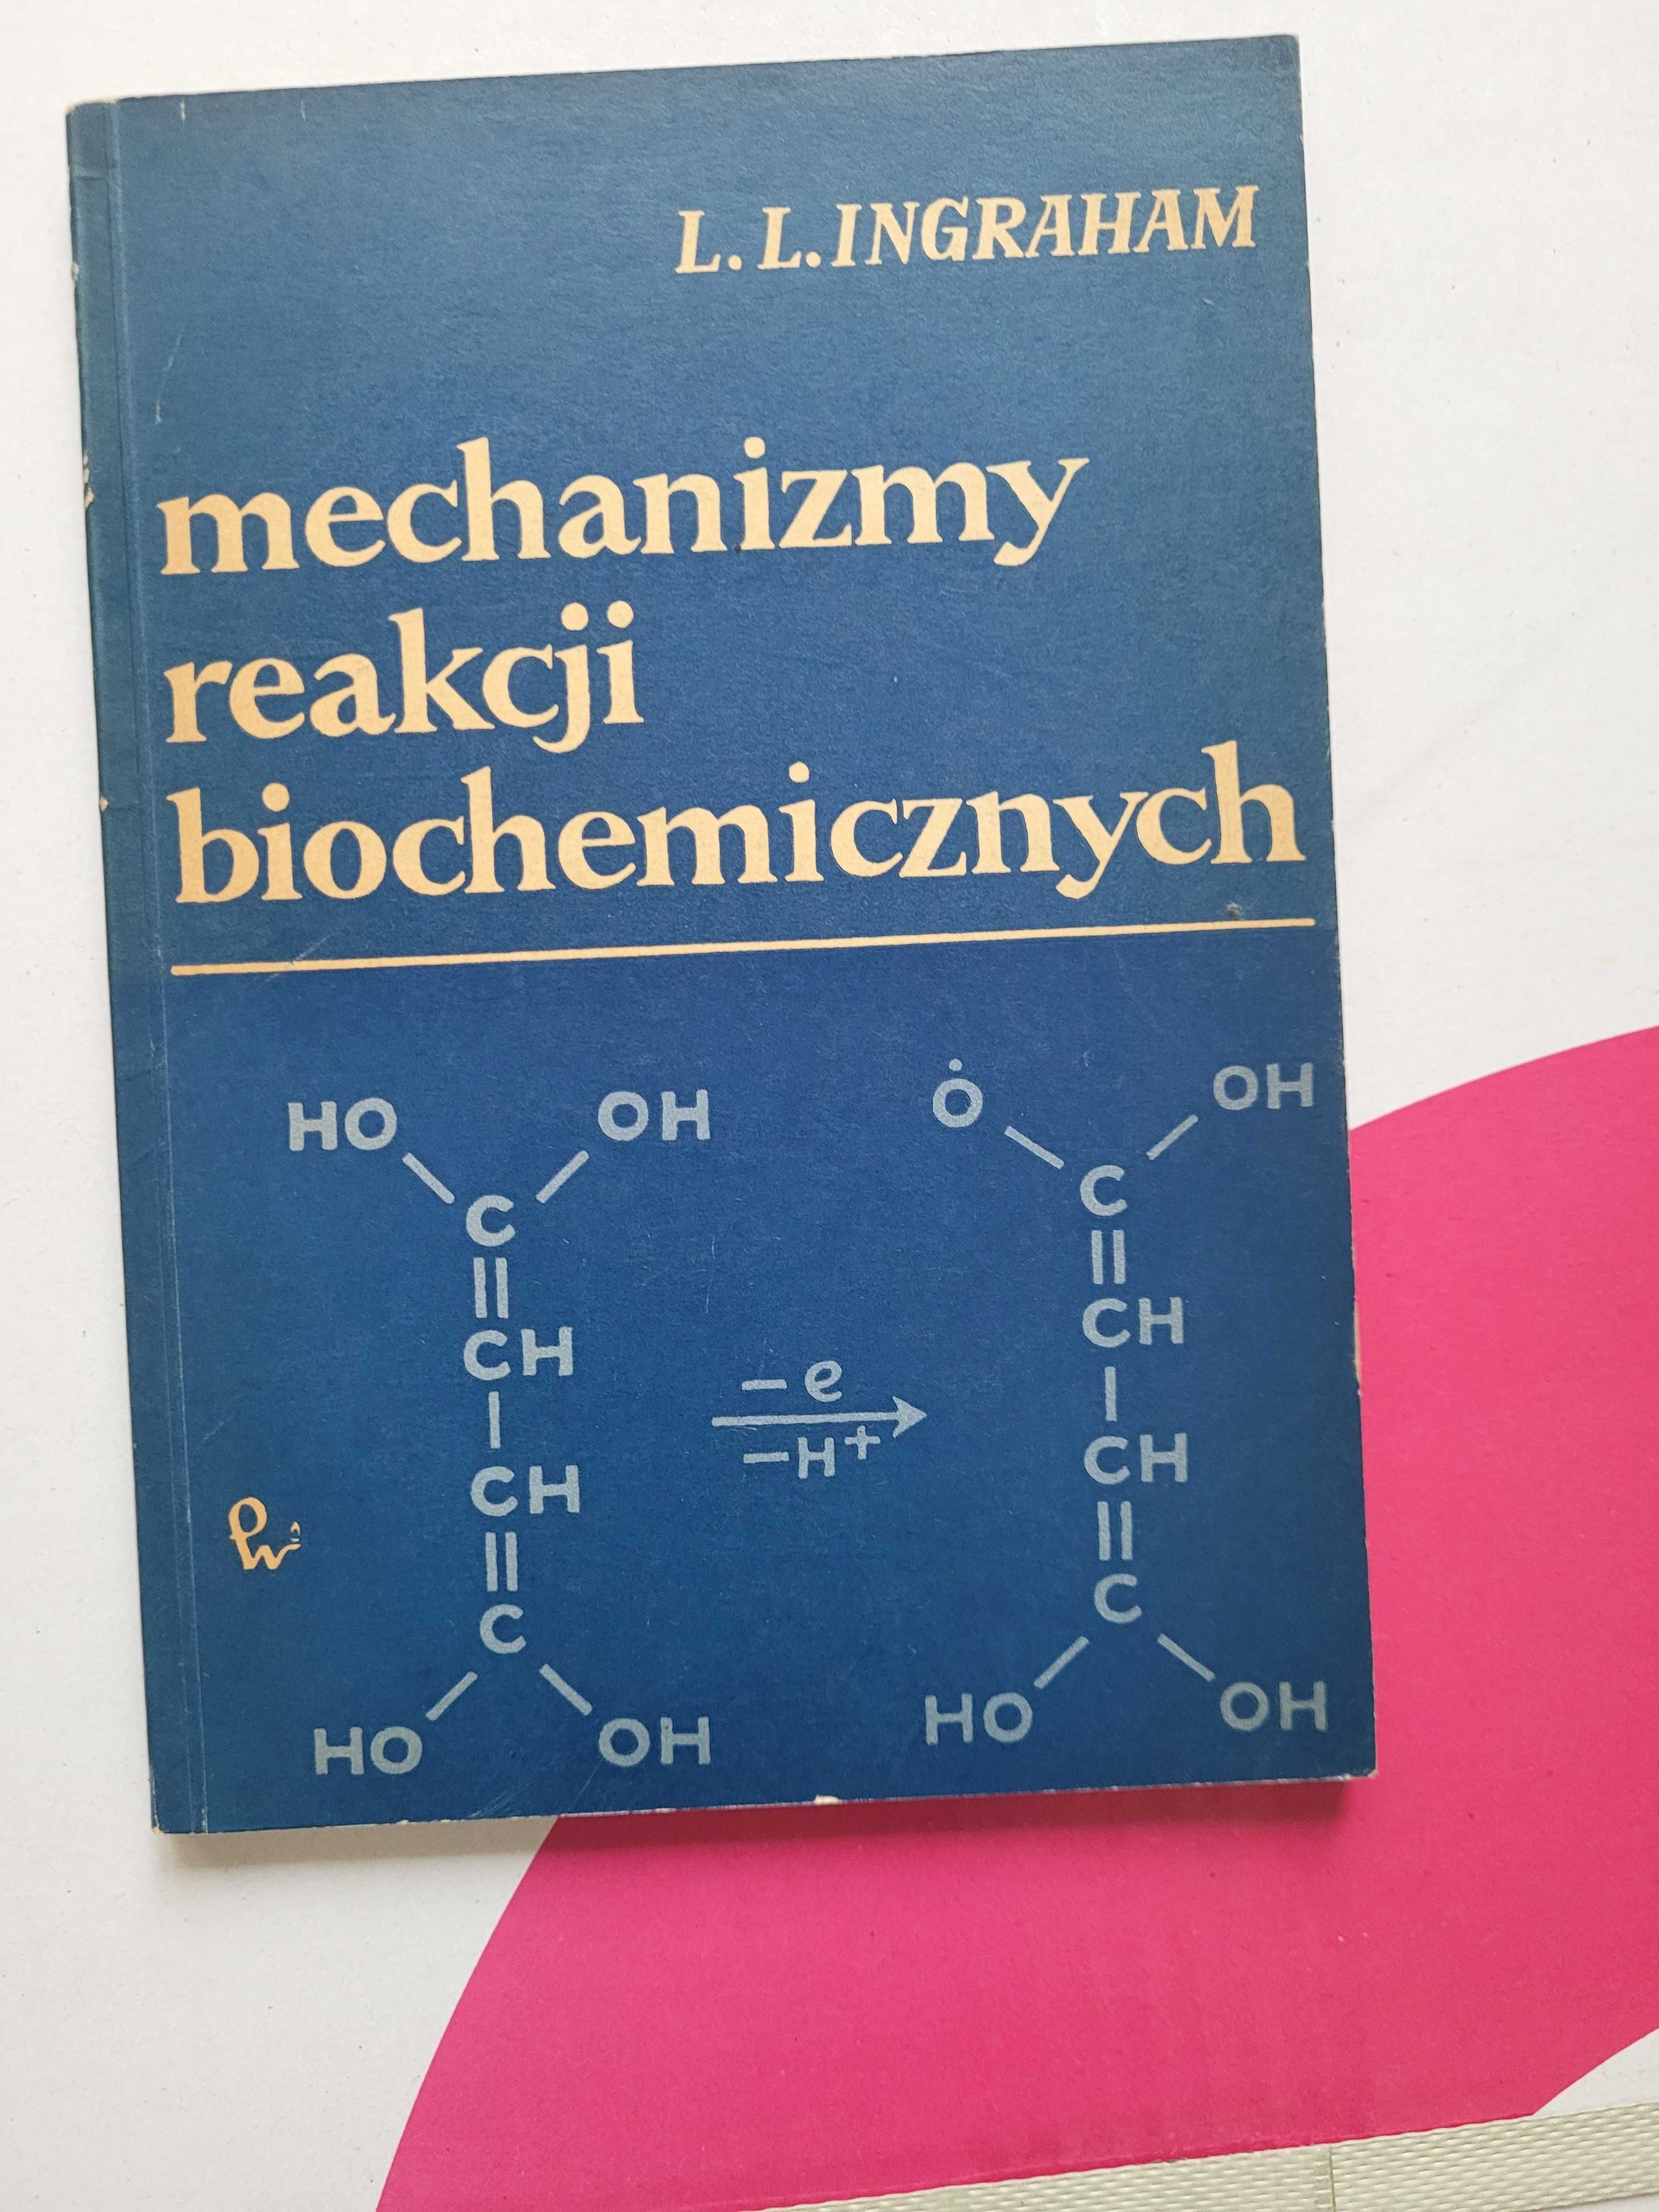 L.L. INGRAHAM Mechanizmy reakcji biochemicznych